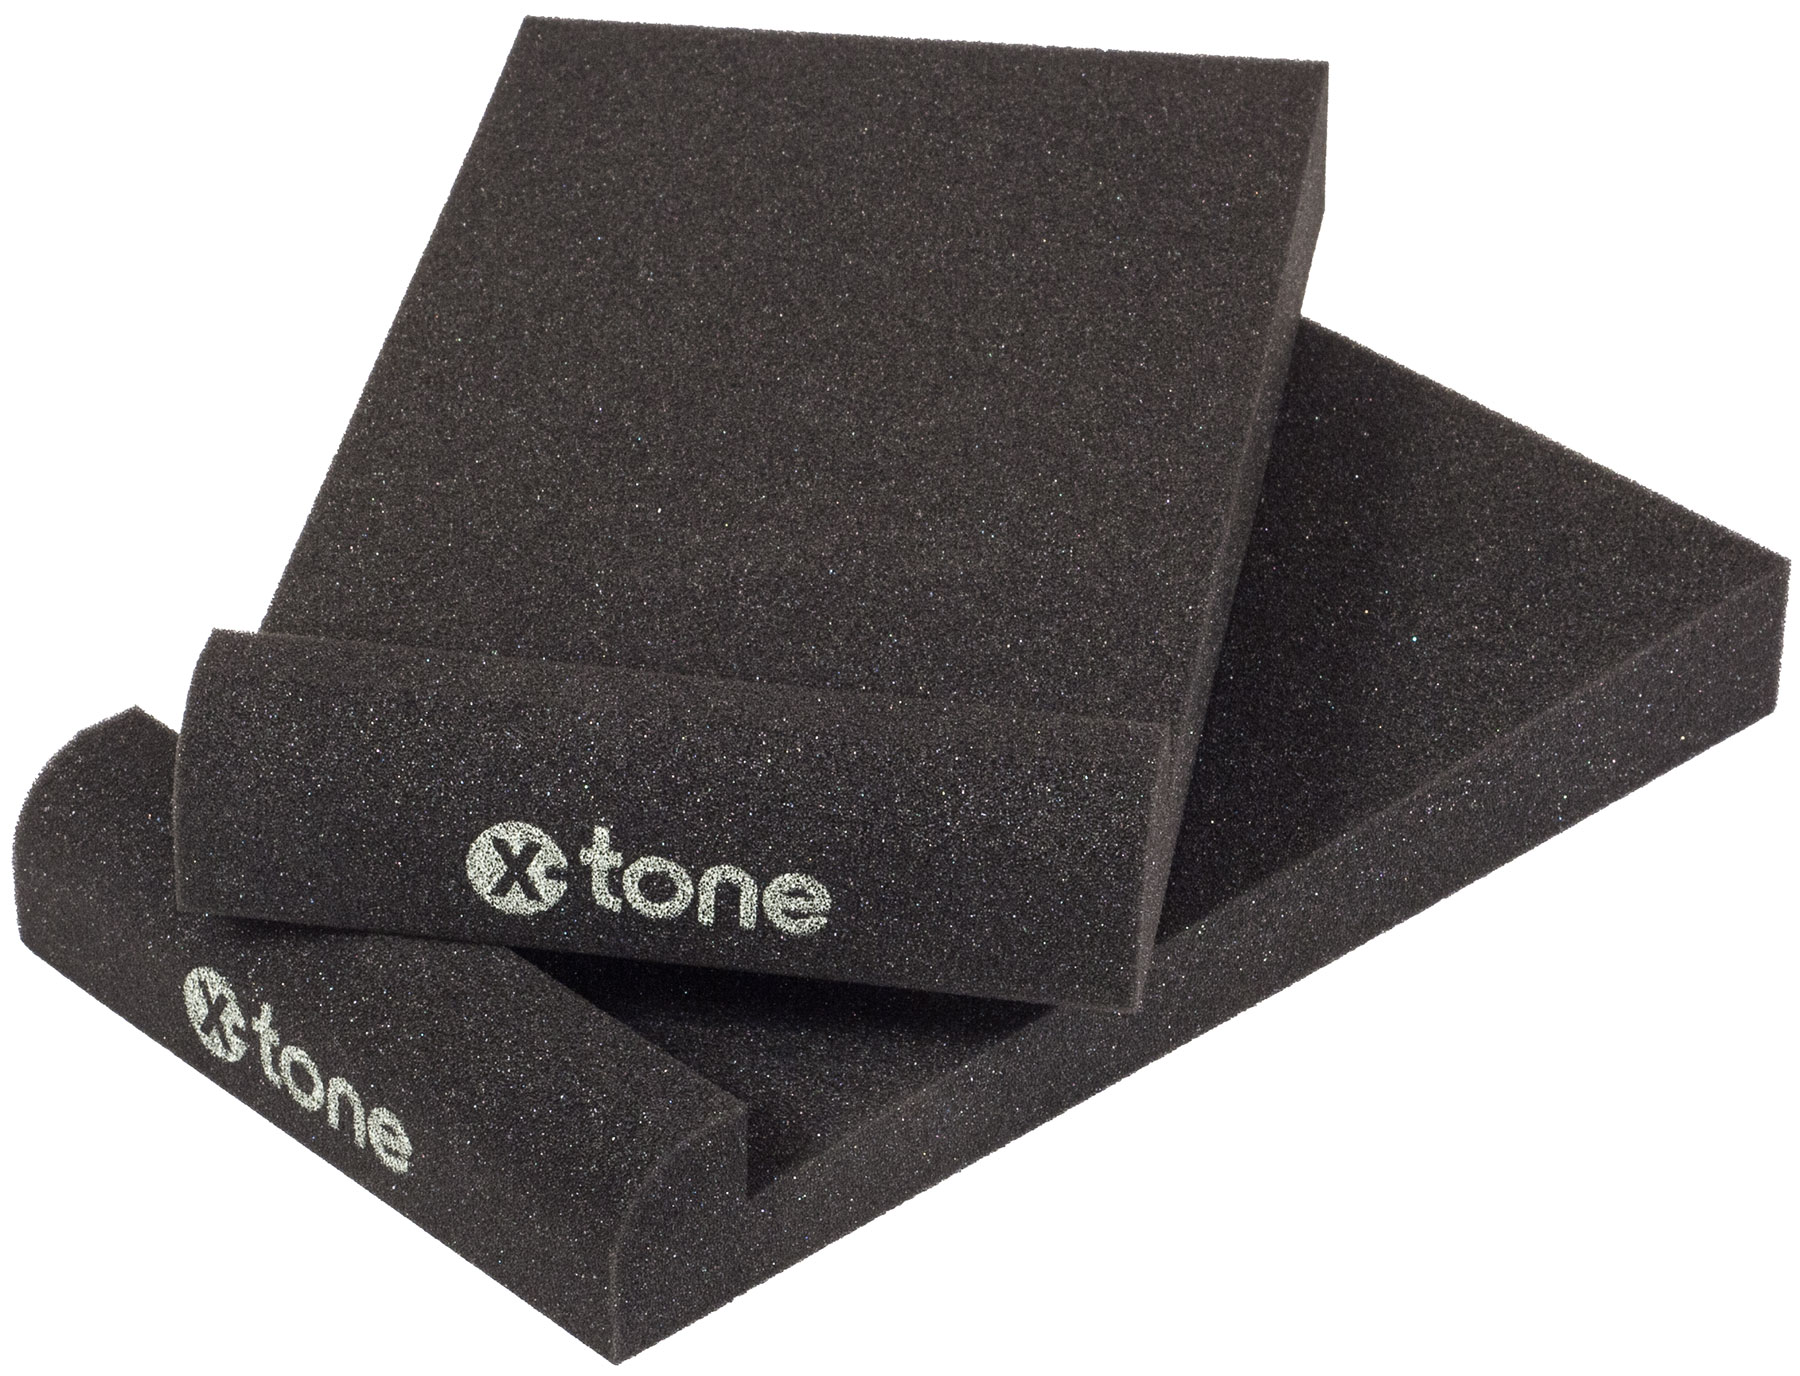 X-tone Xi 7000 Mousse Isolante Moniteurs (paire) - Lautsprecher isolations-pads - Variation 1